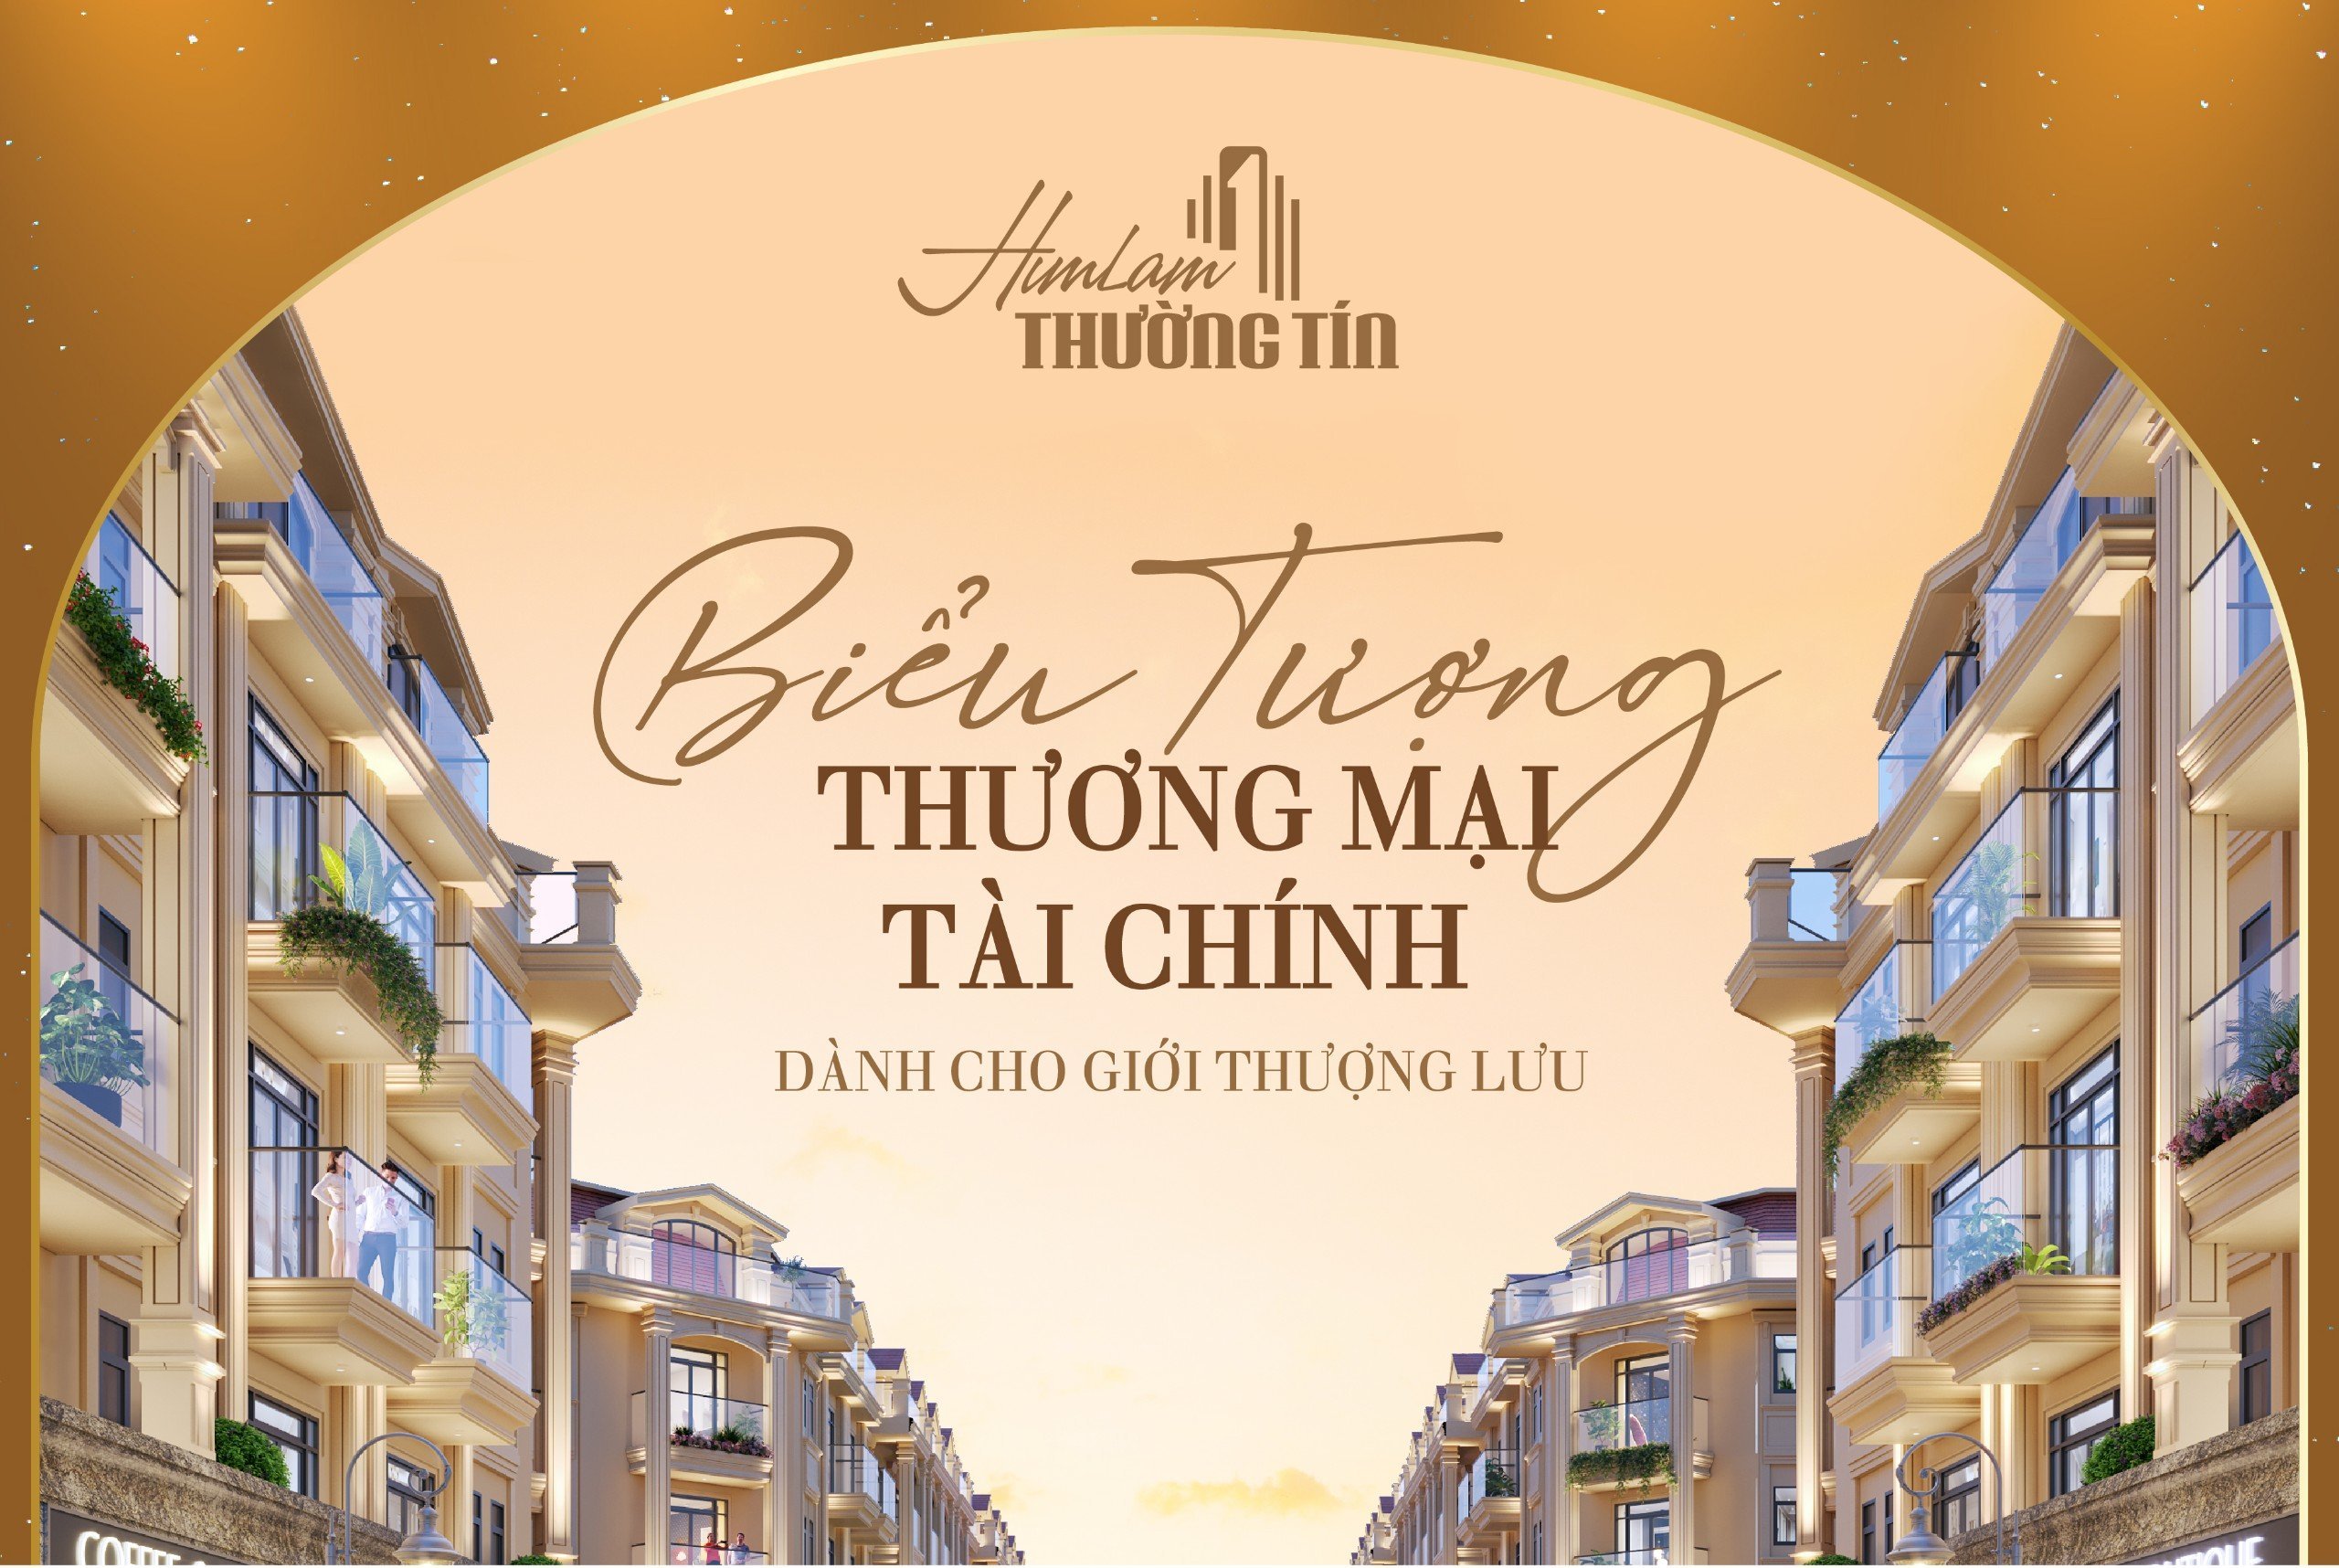 Him Lam Thường Tín